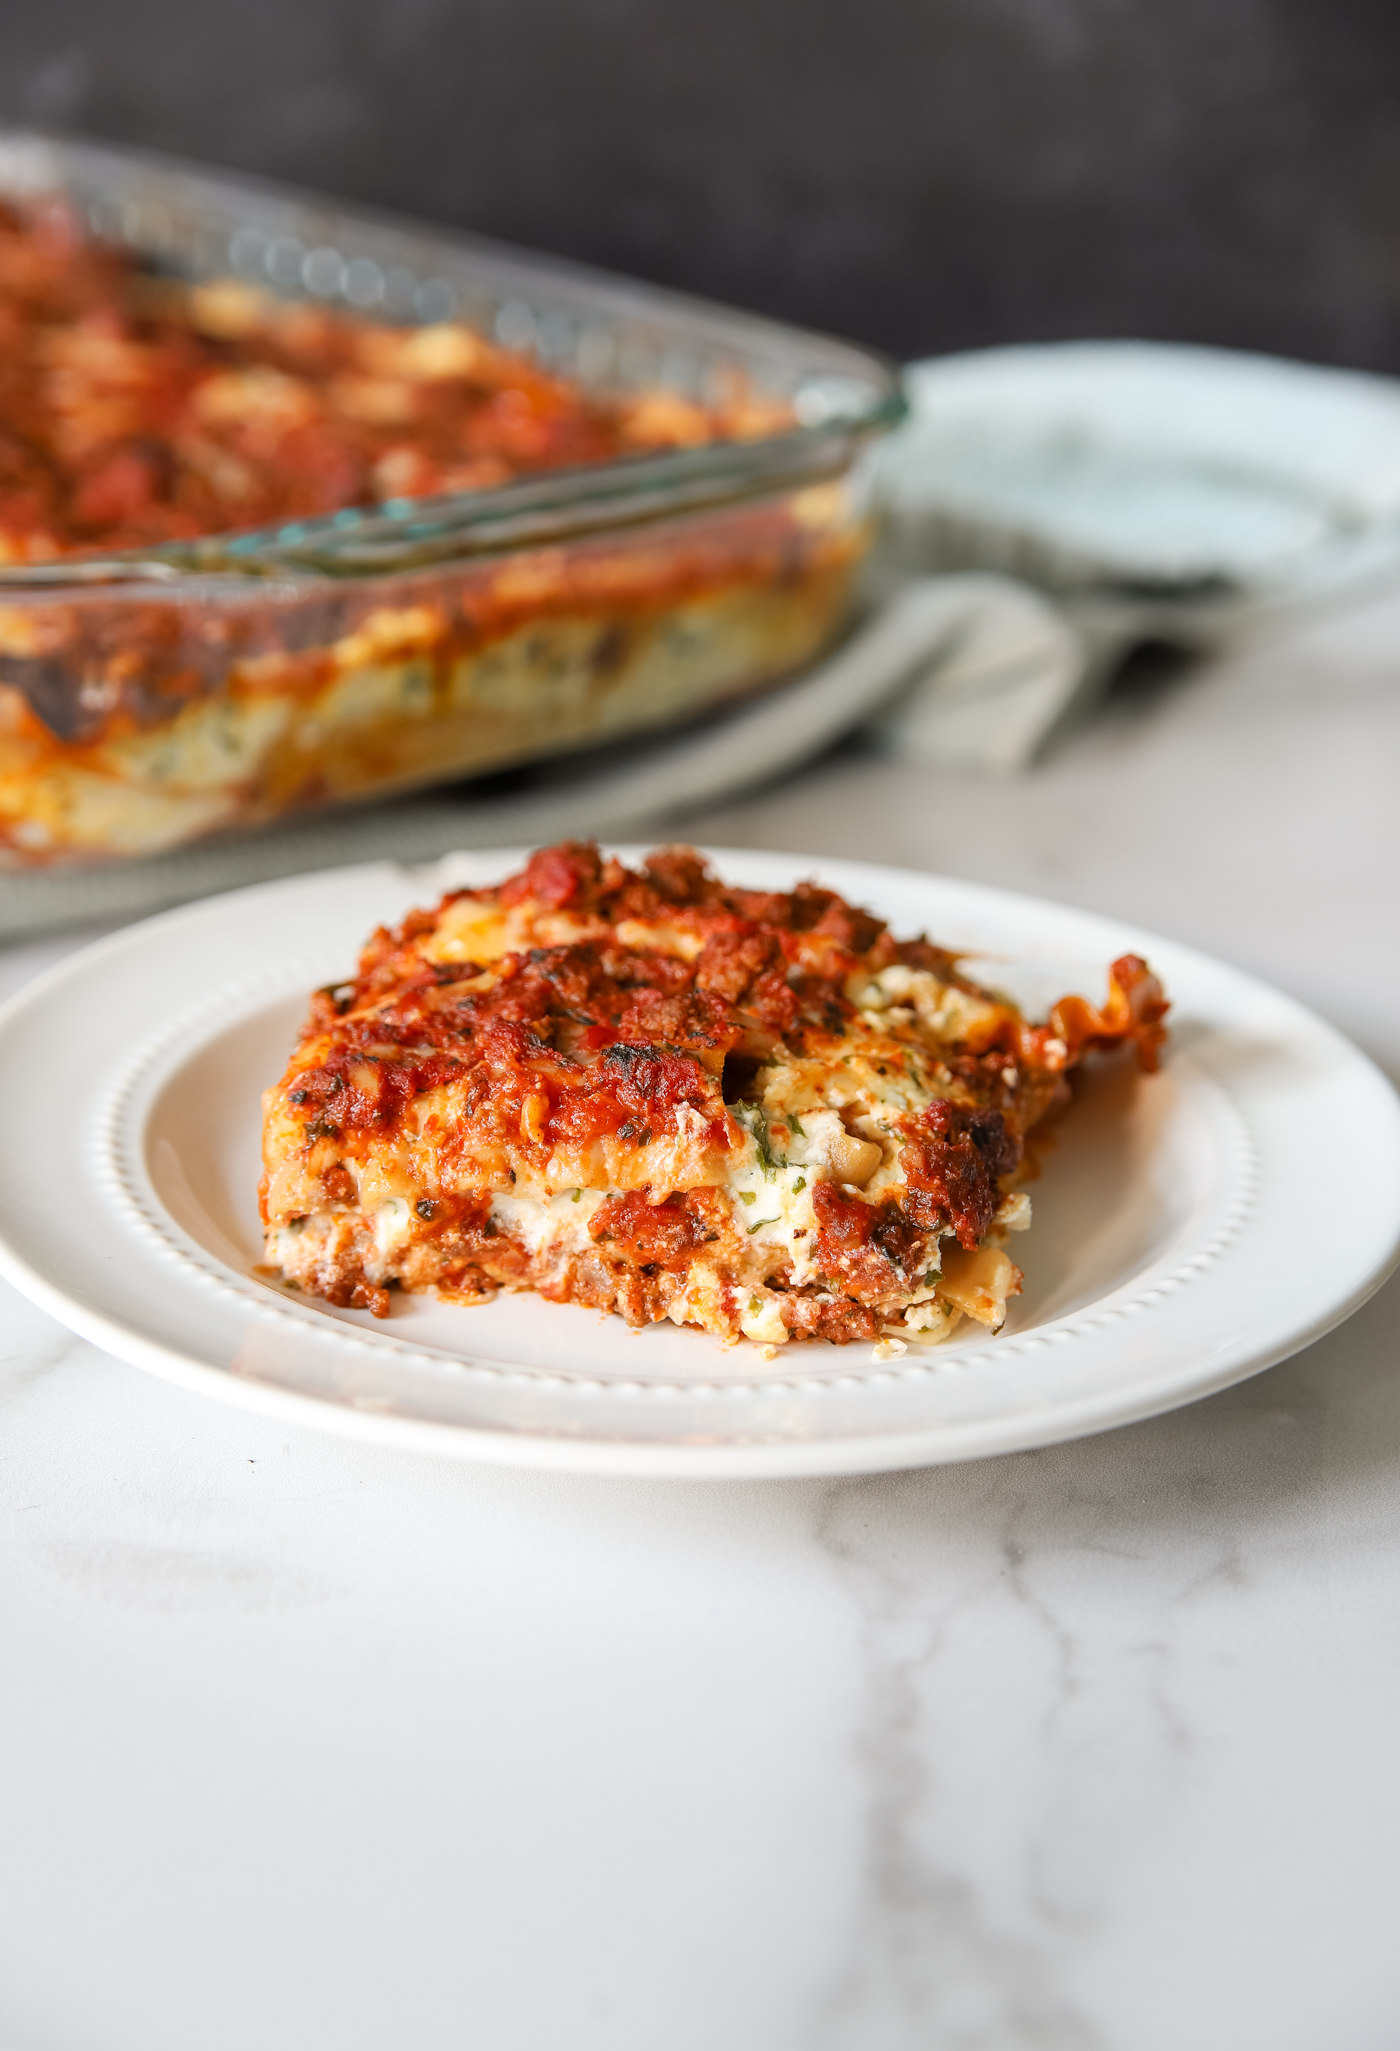 A Homemade Classic Lasagna Recipe - Comfort Food at Home